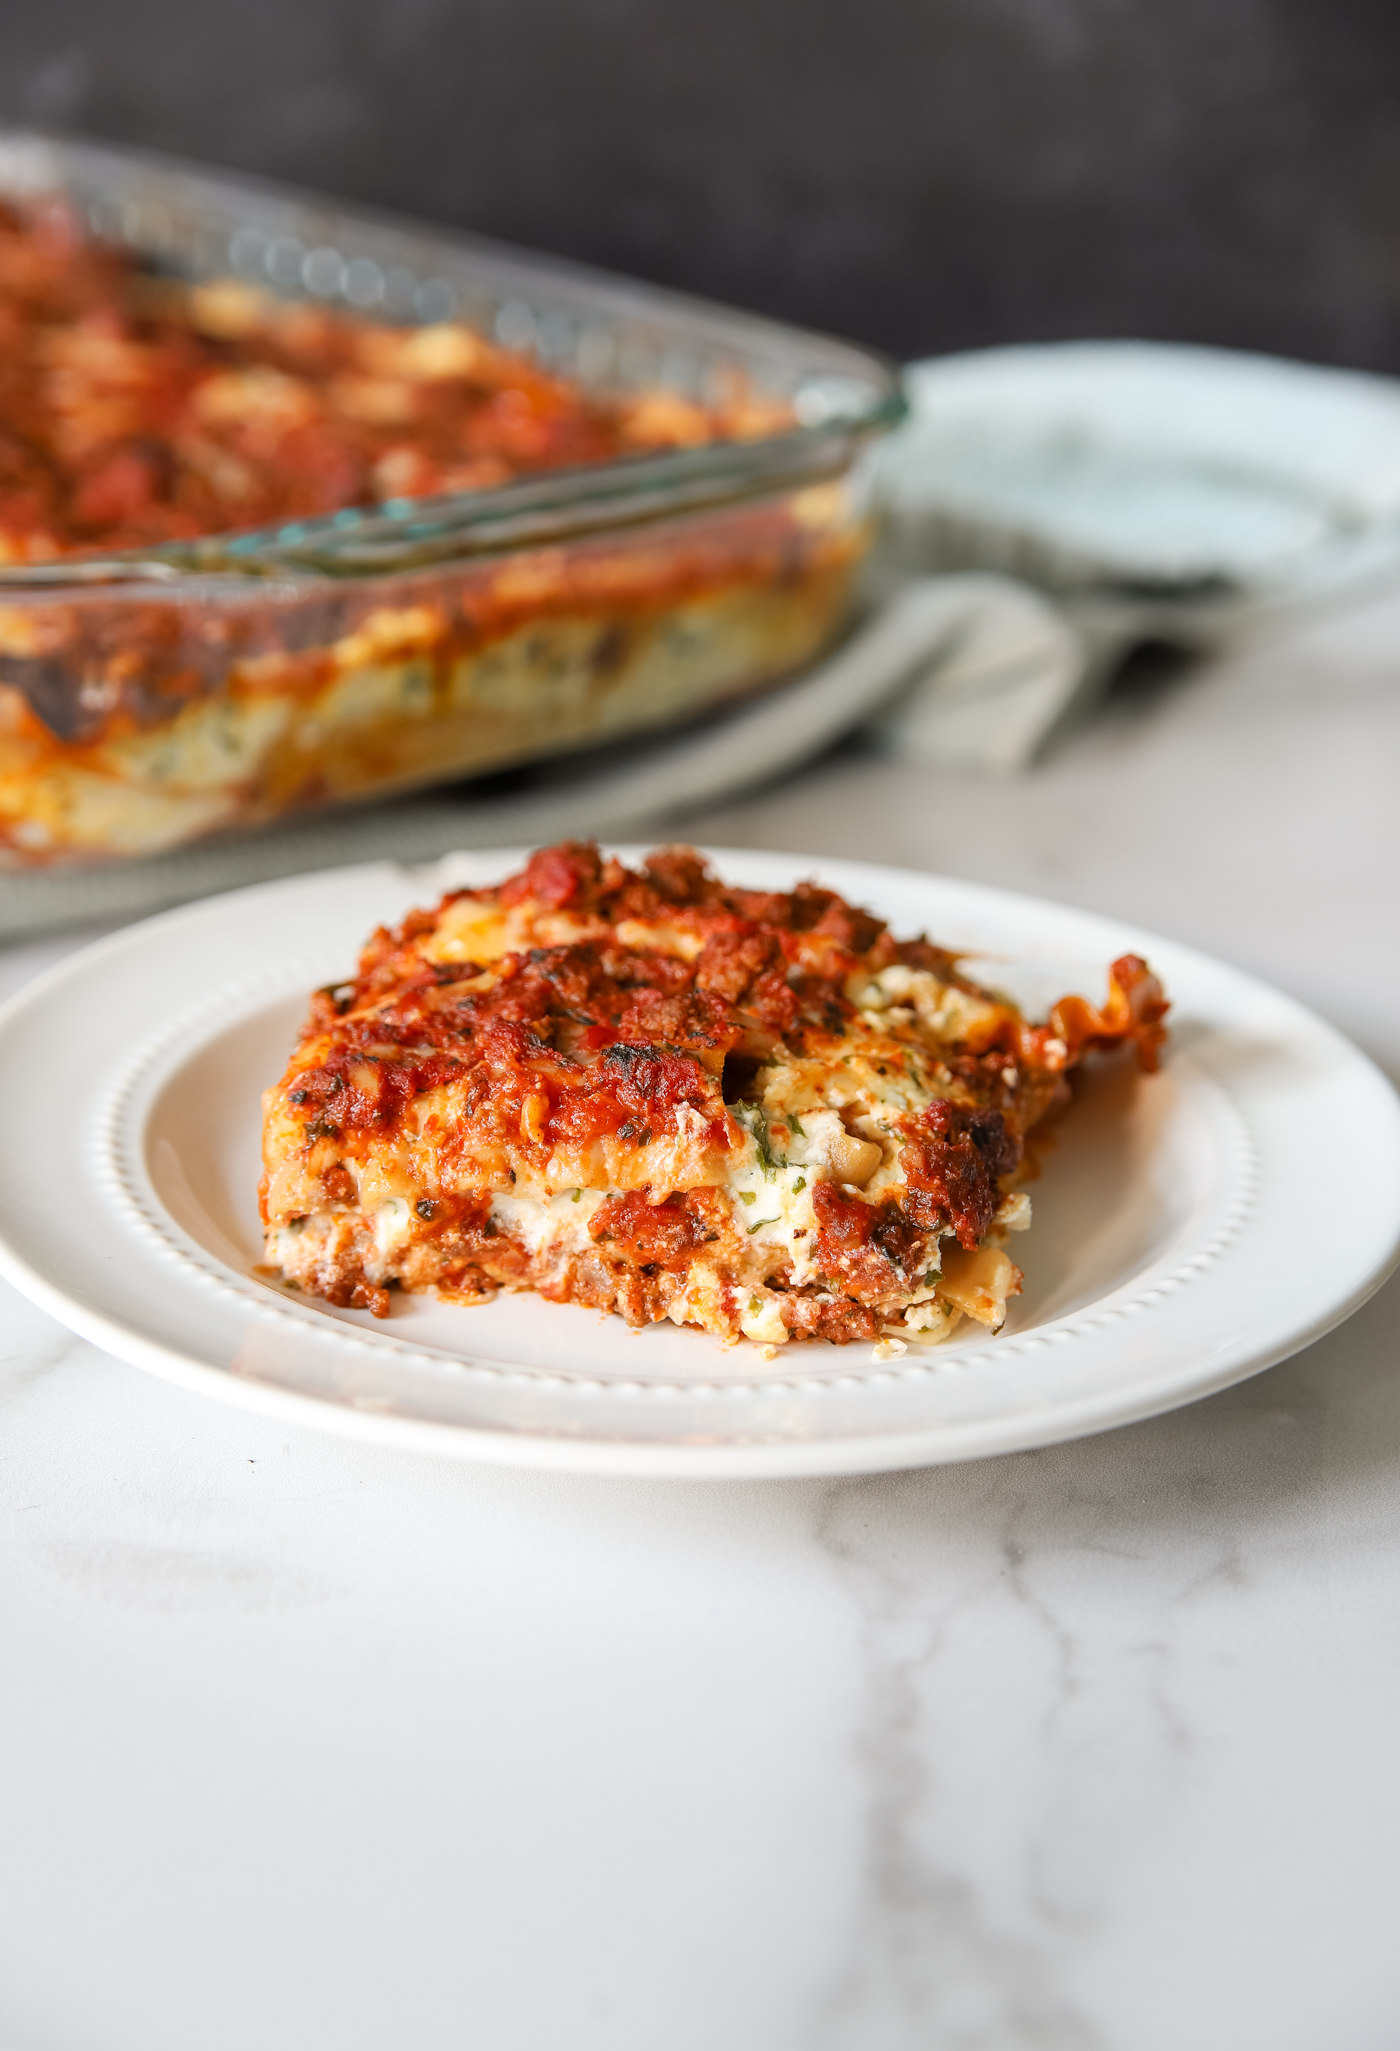 A Homemade Classic Lasagna Recipe - Comfort Food at Home